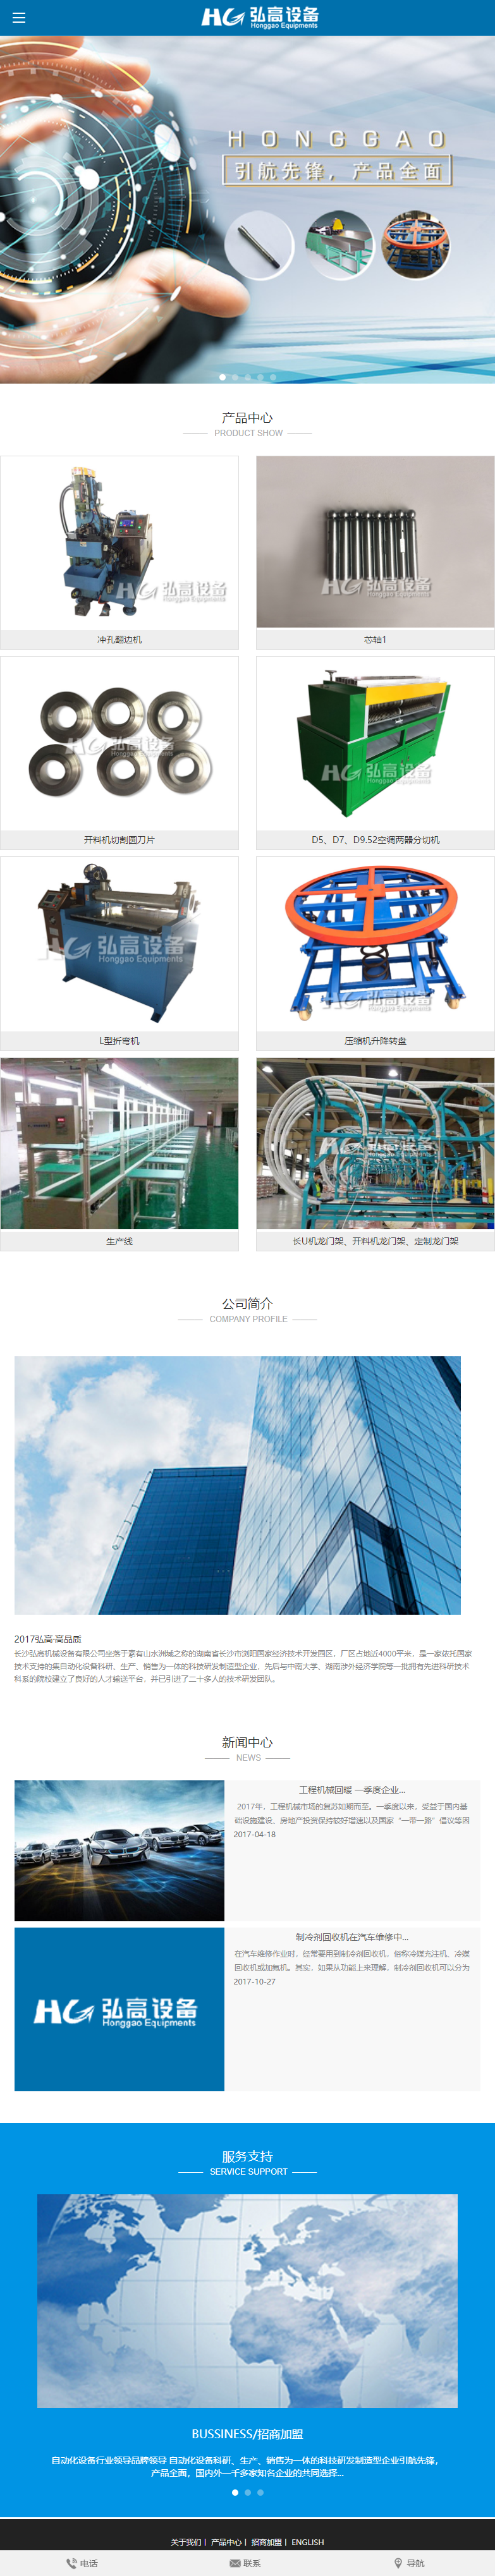 长沙弘高机械设备有限公司网站案例